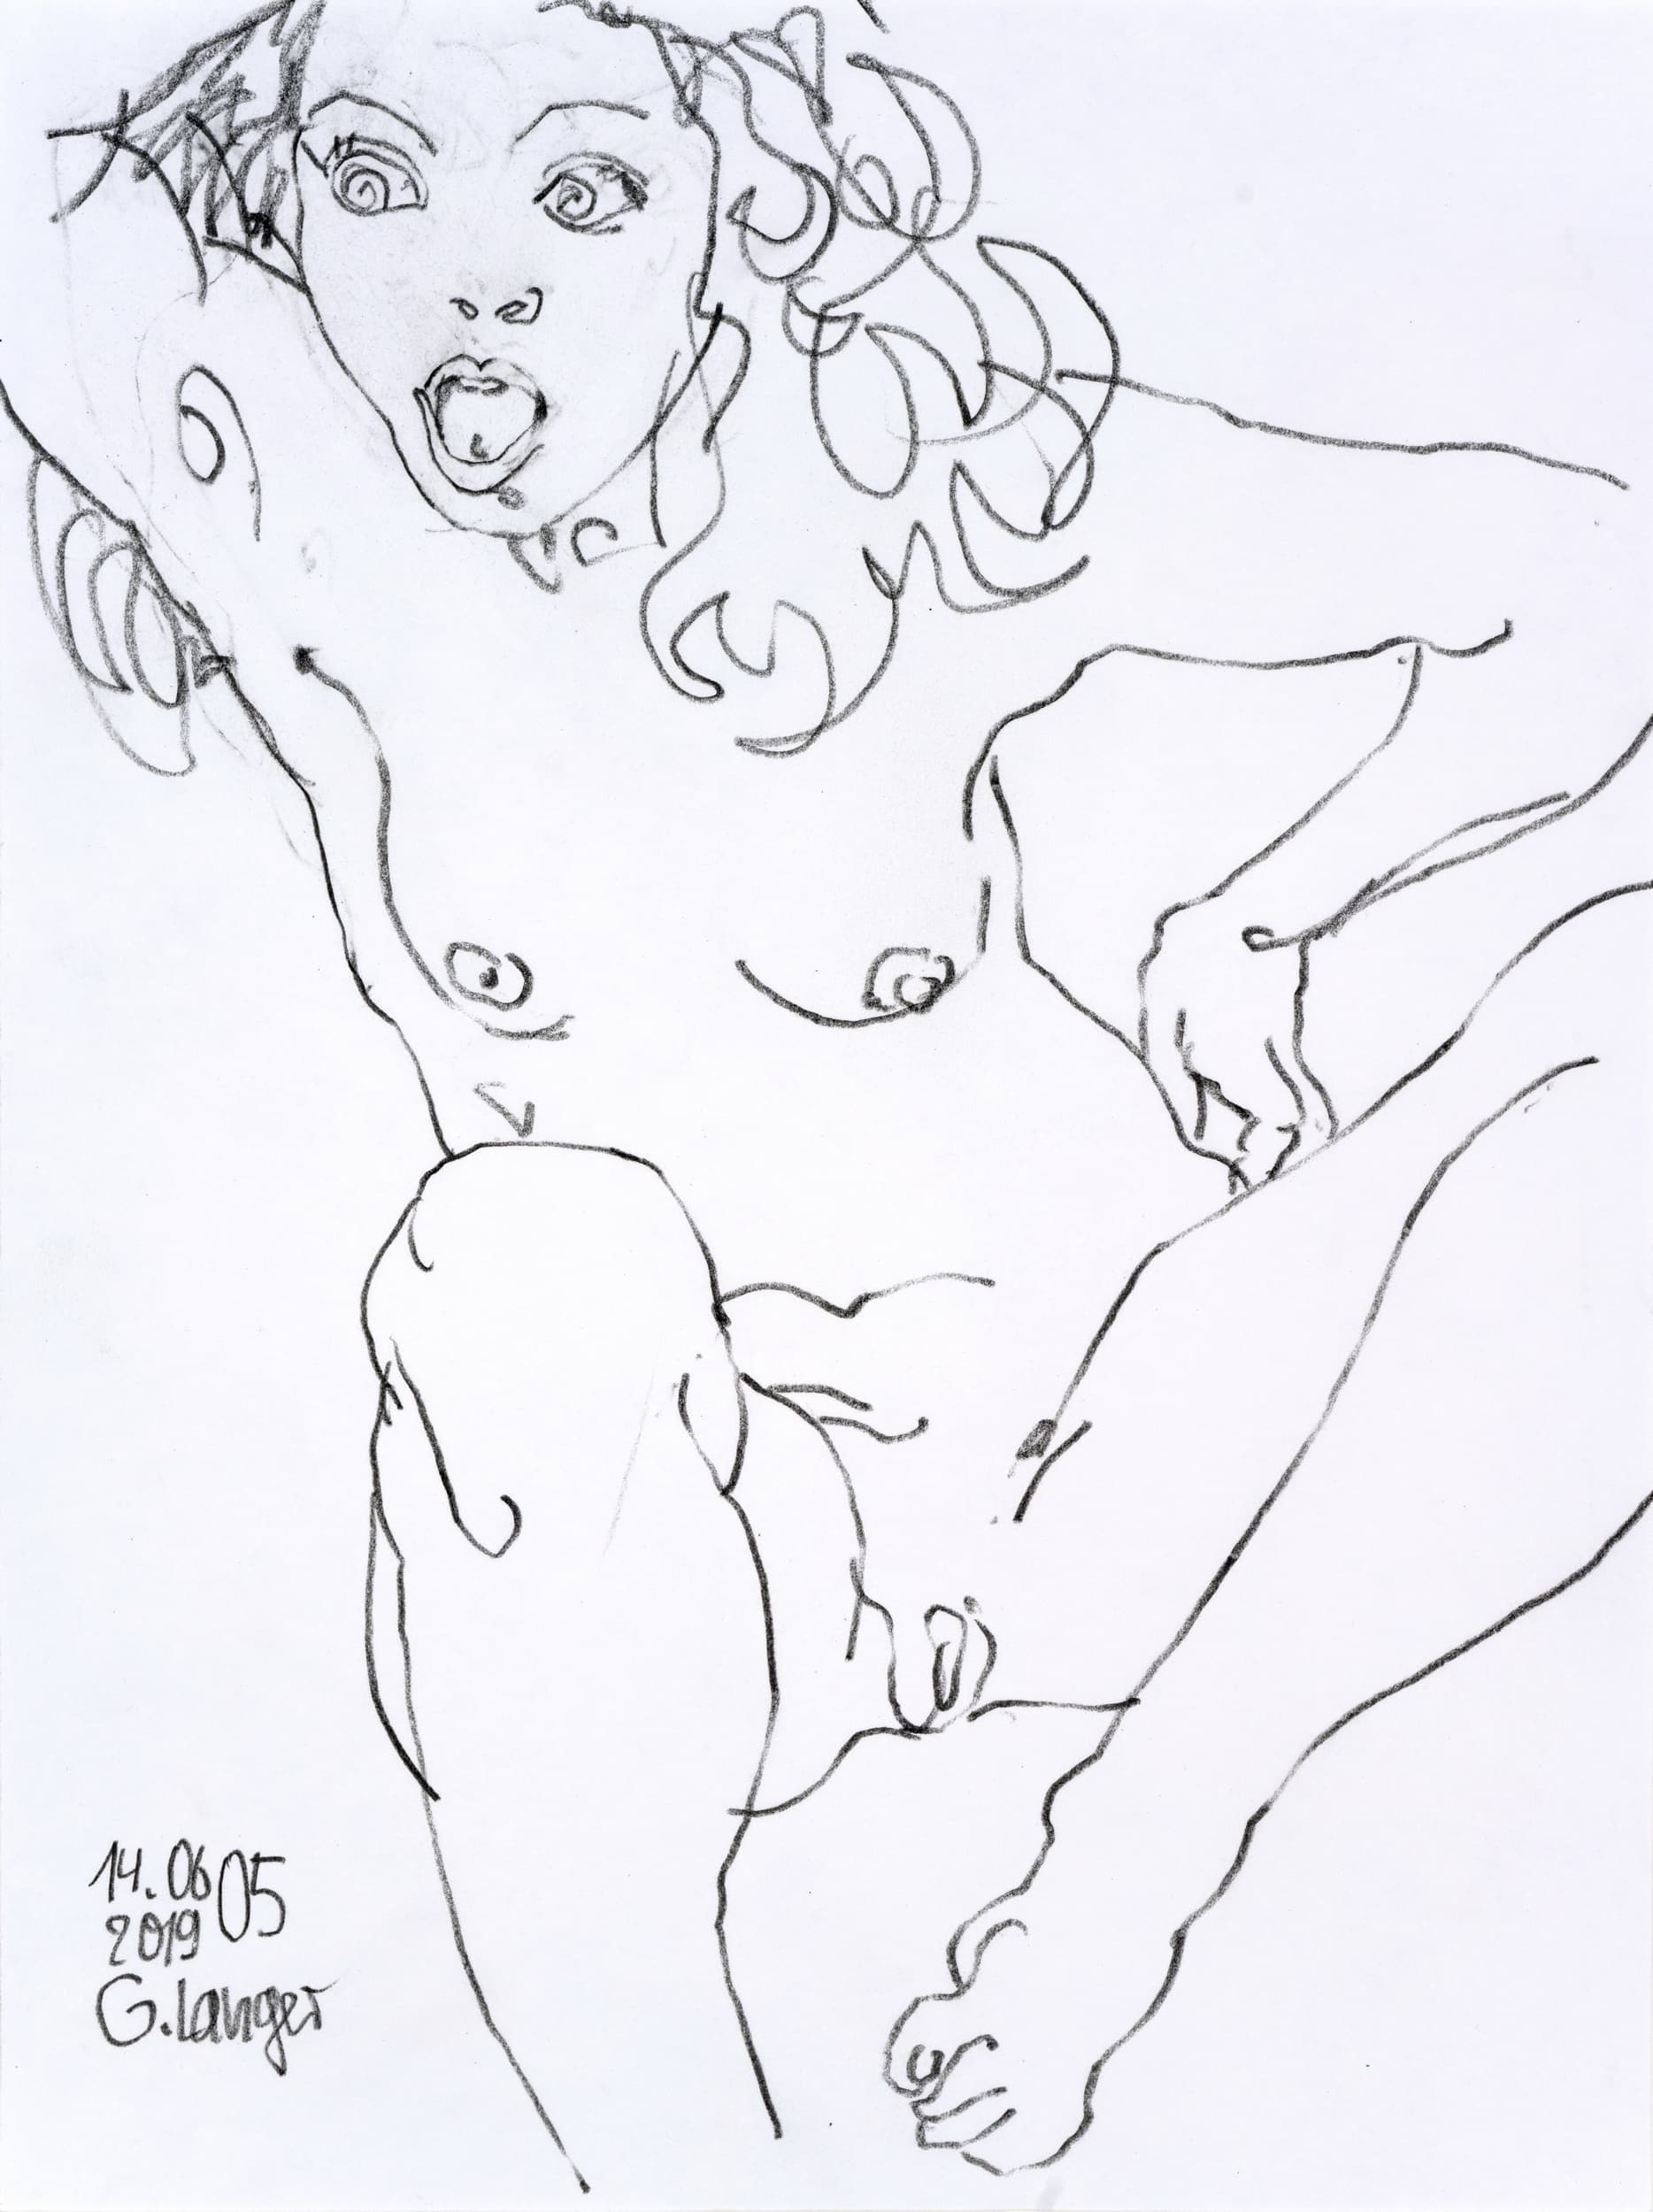 Gunter Langer, weiblicher Akt, sitzend, rufend, 2019, Zeichnung, Karton, 40 x 30 cm